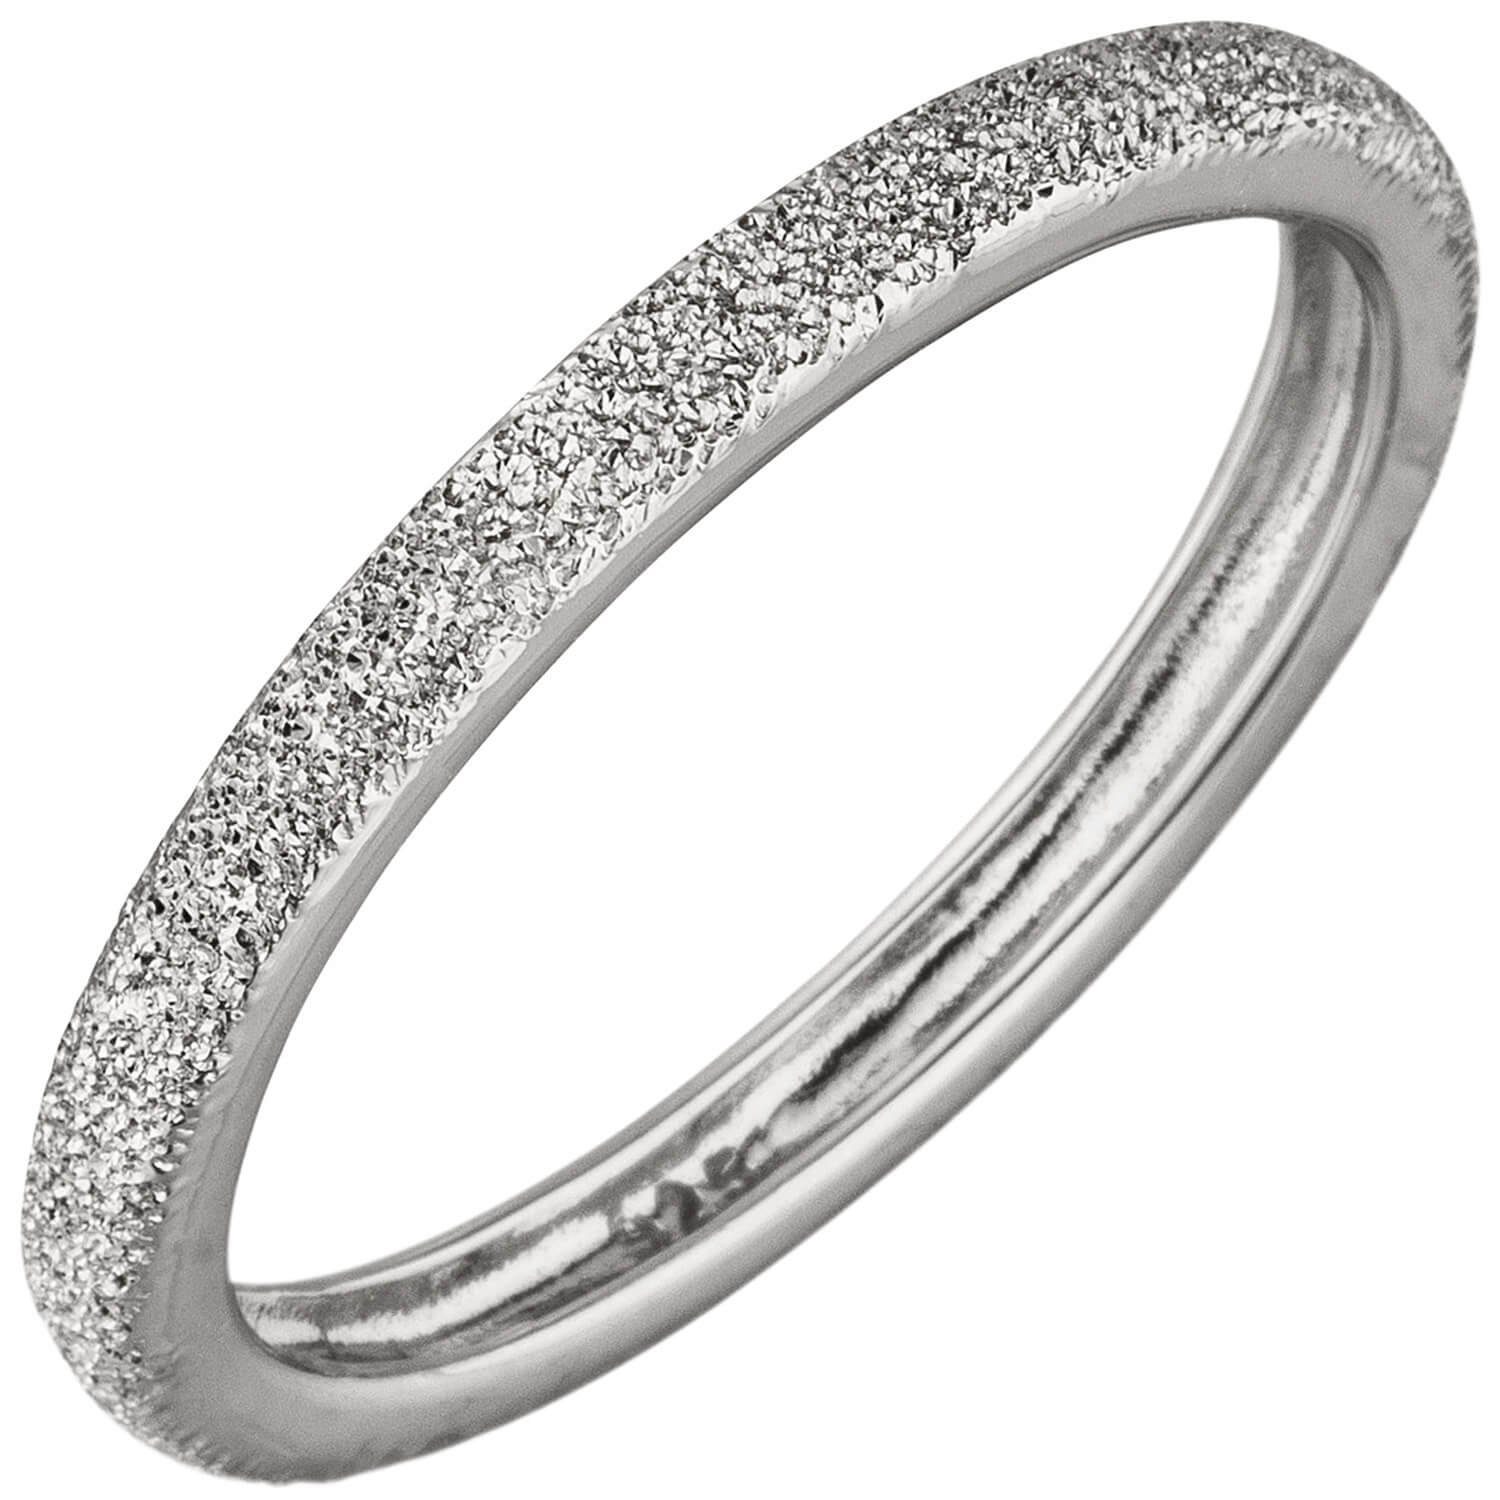 Silber Silberring Damenring Struktur 925 mit Silber Sternenstaub Krone Ring schmal, Schmuck aus 925 2,2mm flach